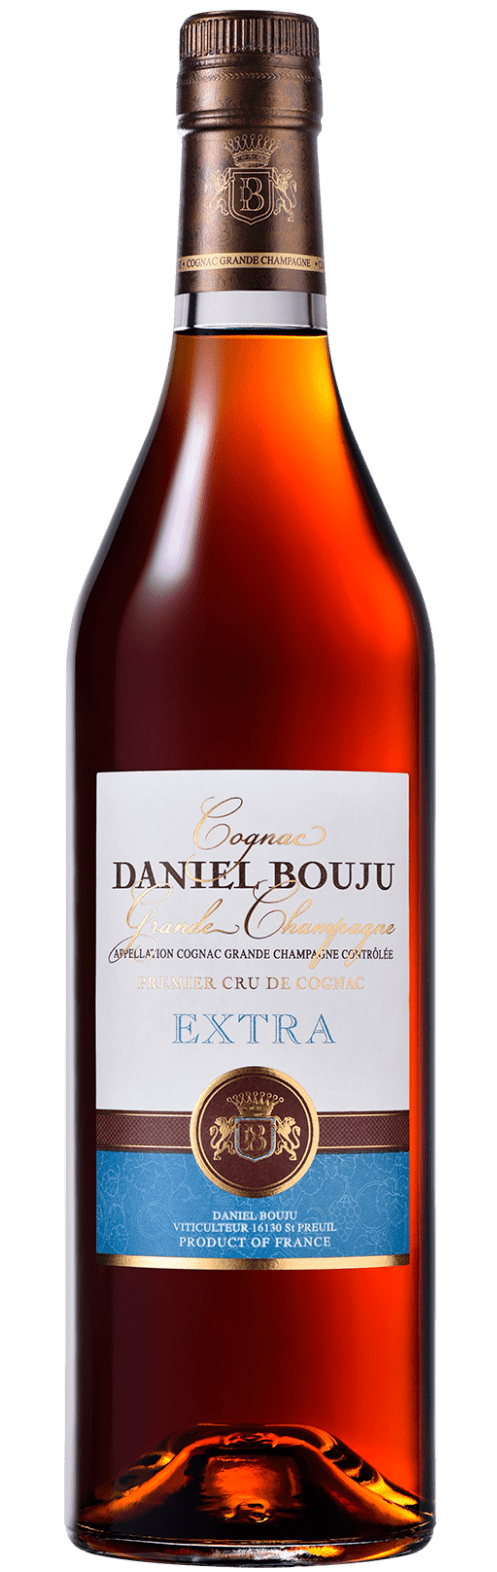 Extra Cognac Grande Champagne A.C.C. Daniel Bouju